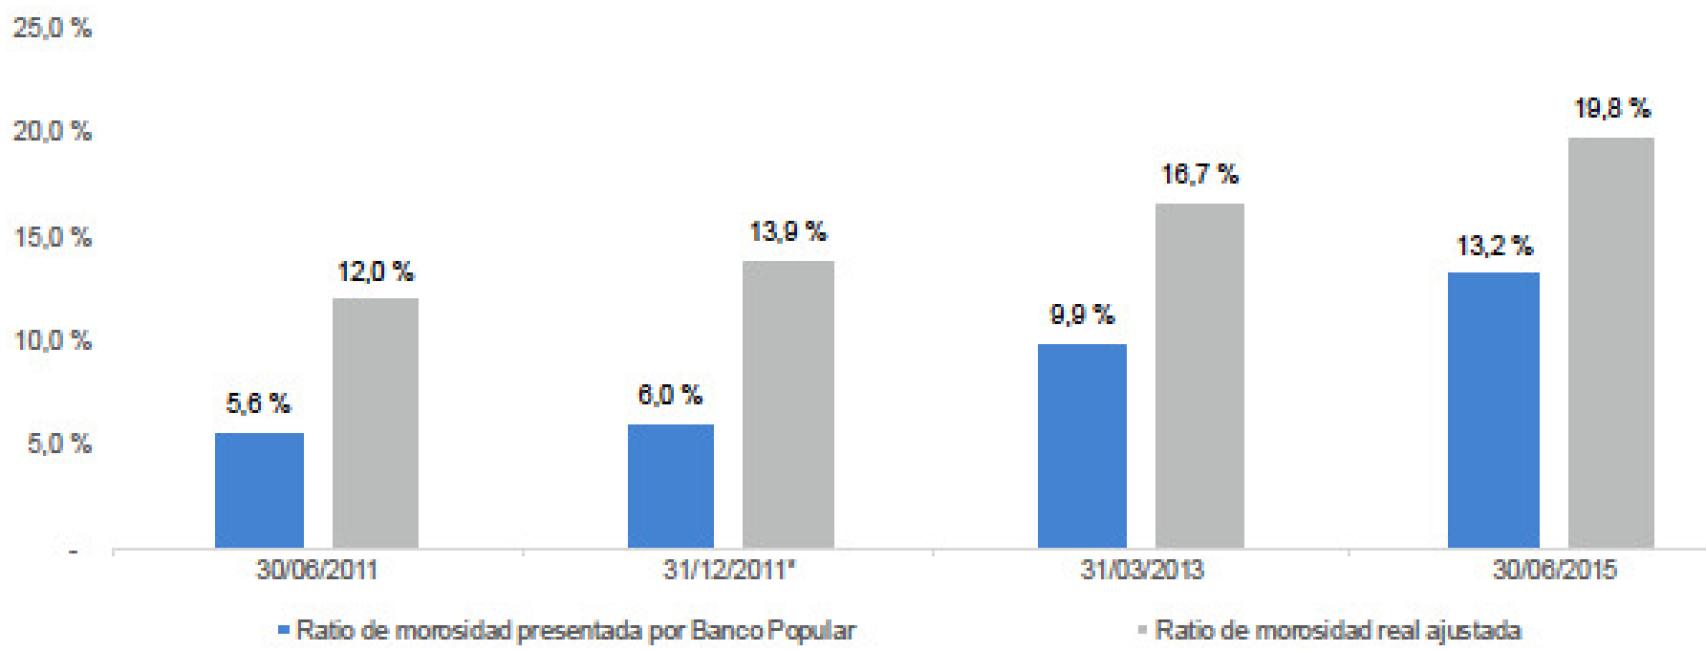 Ratio de morosidad presentada por Banco Popular vs. ratio de morosidad real ajustada.